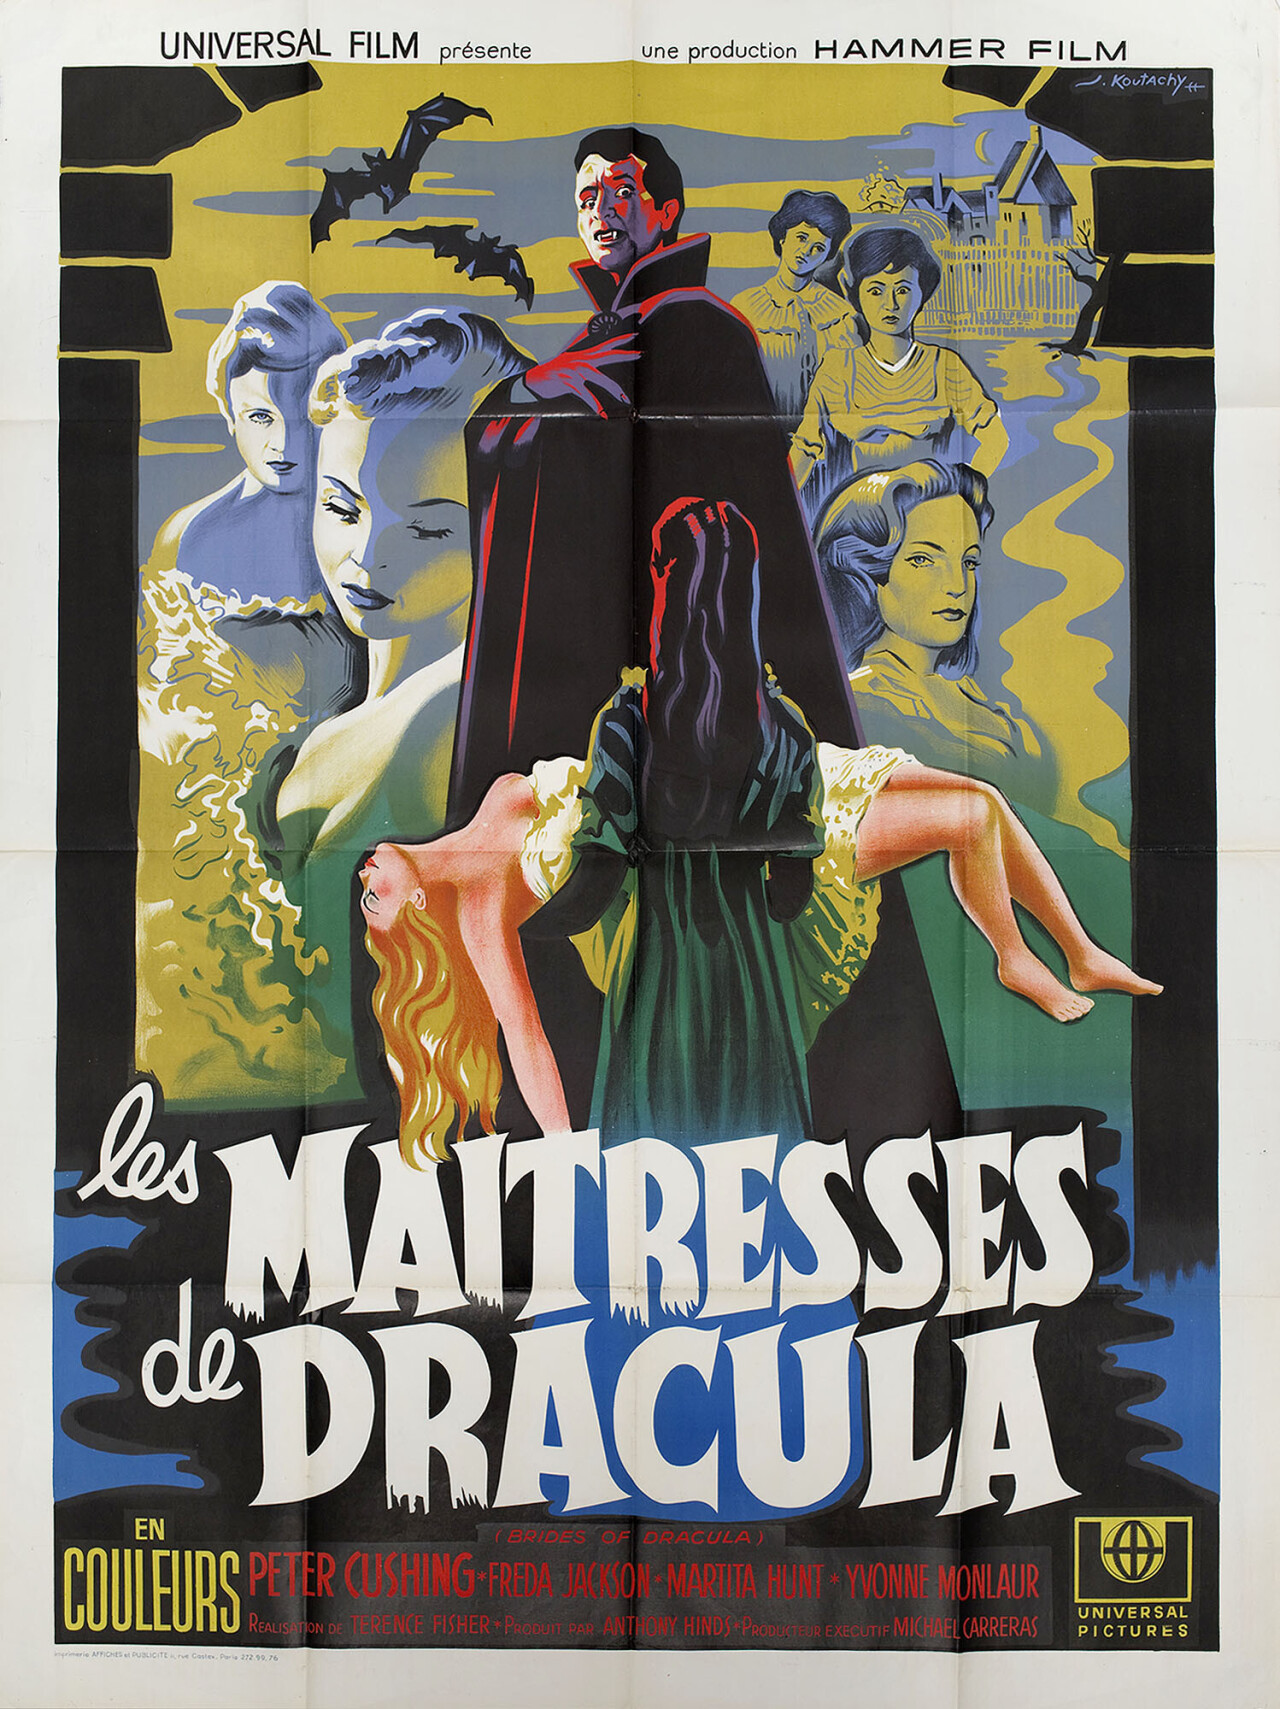 Невесты Дракулы (The Brides of Dracula, 1960), режиссёр Теренс Фишер, французский постер к фильму, автор Джозеф Кутачи (Hummer horror, 1960 год)